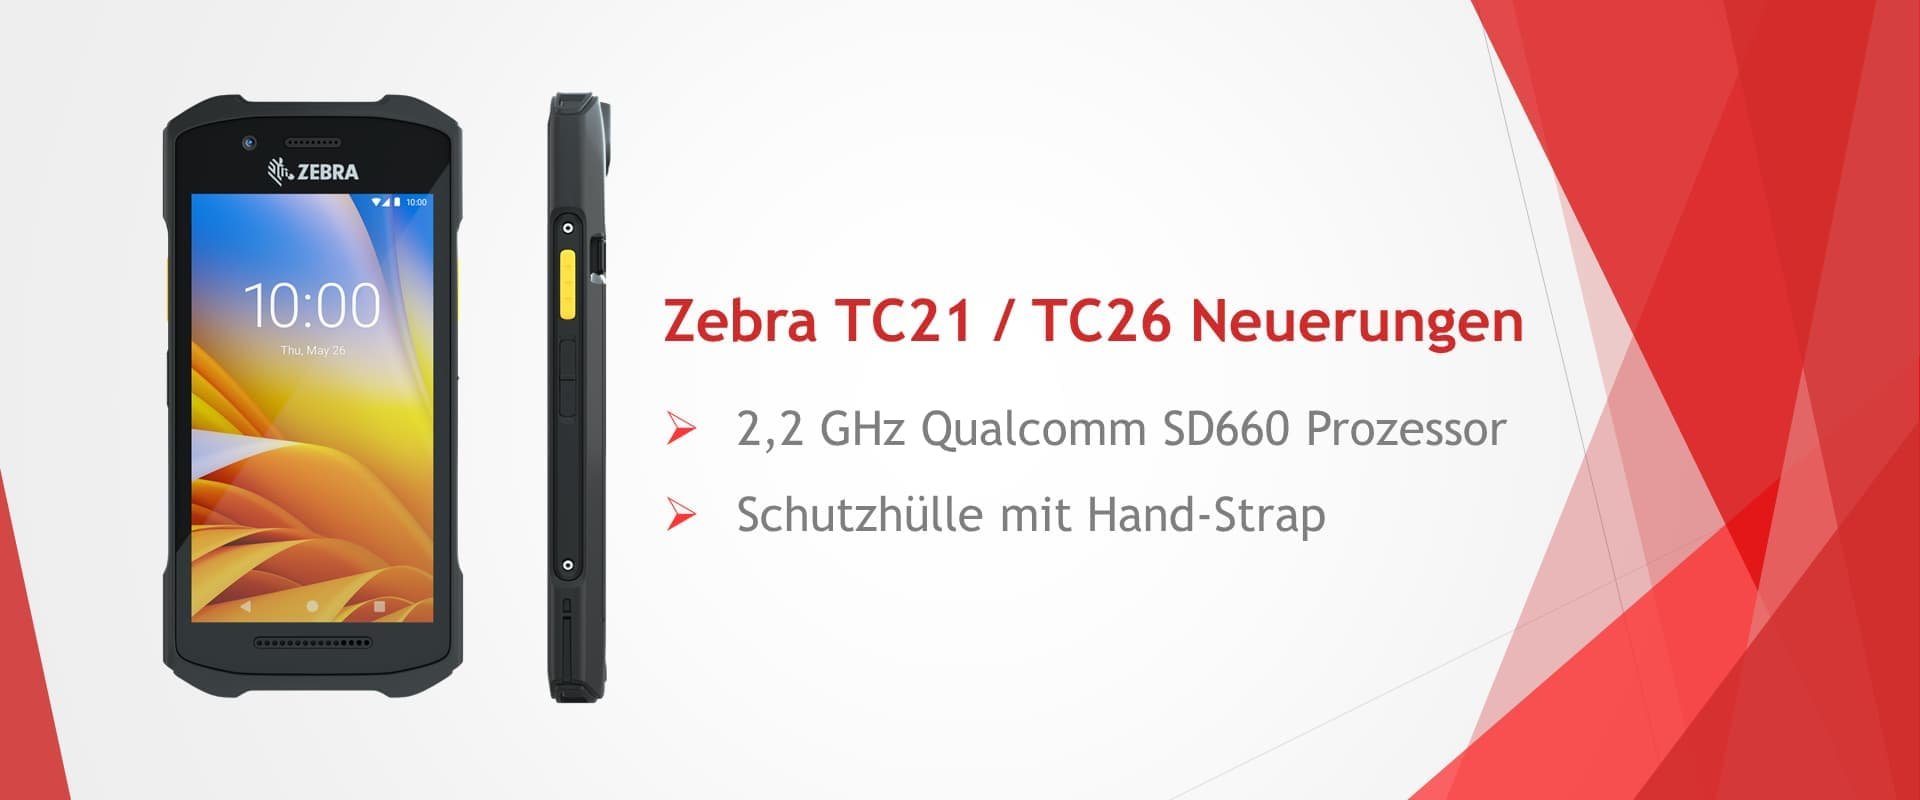 Aktualisierungen für den Zebra TC21 / TC26 – mehr Tempo durch neuen 2,2 GHz Prozessor 